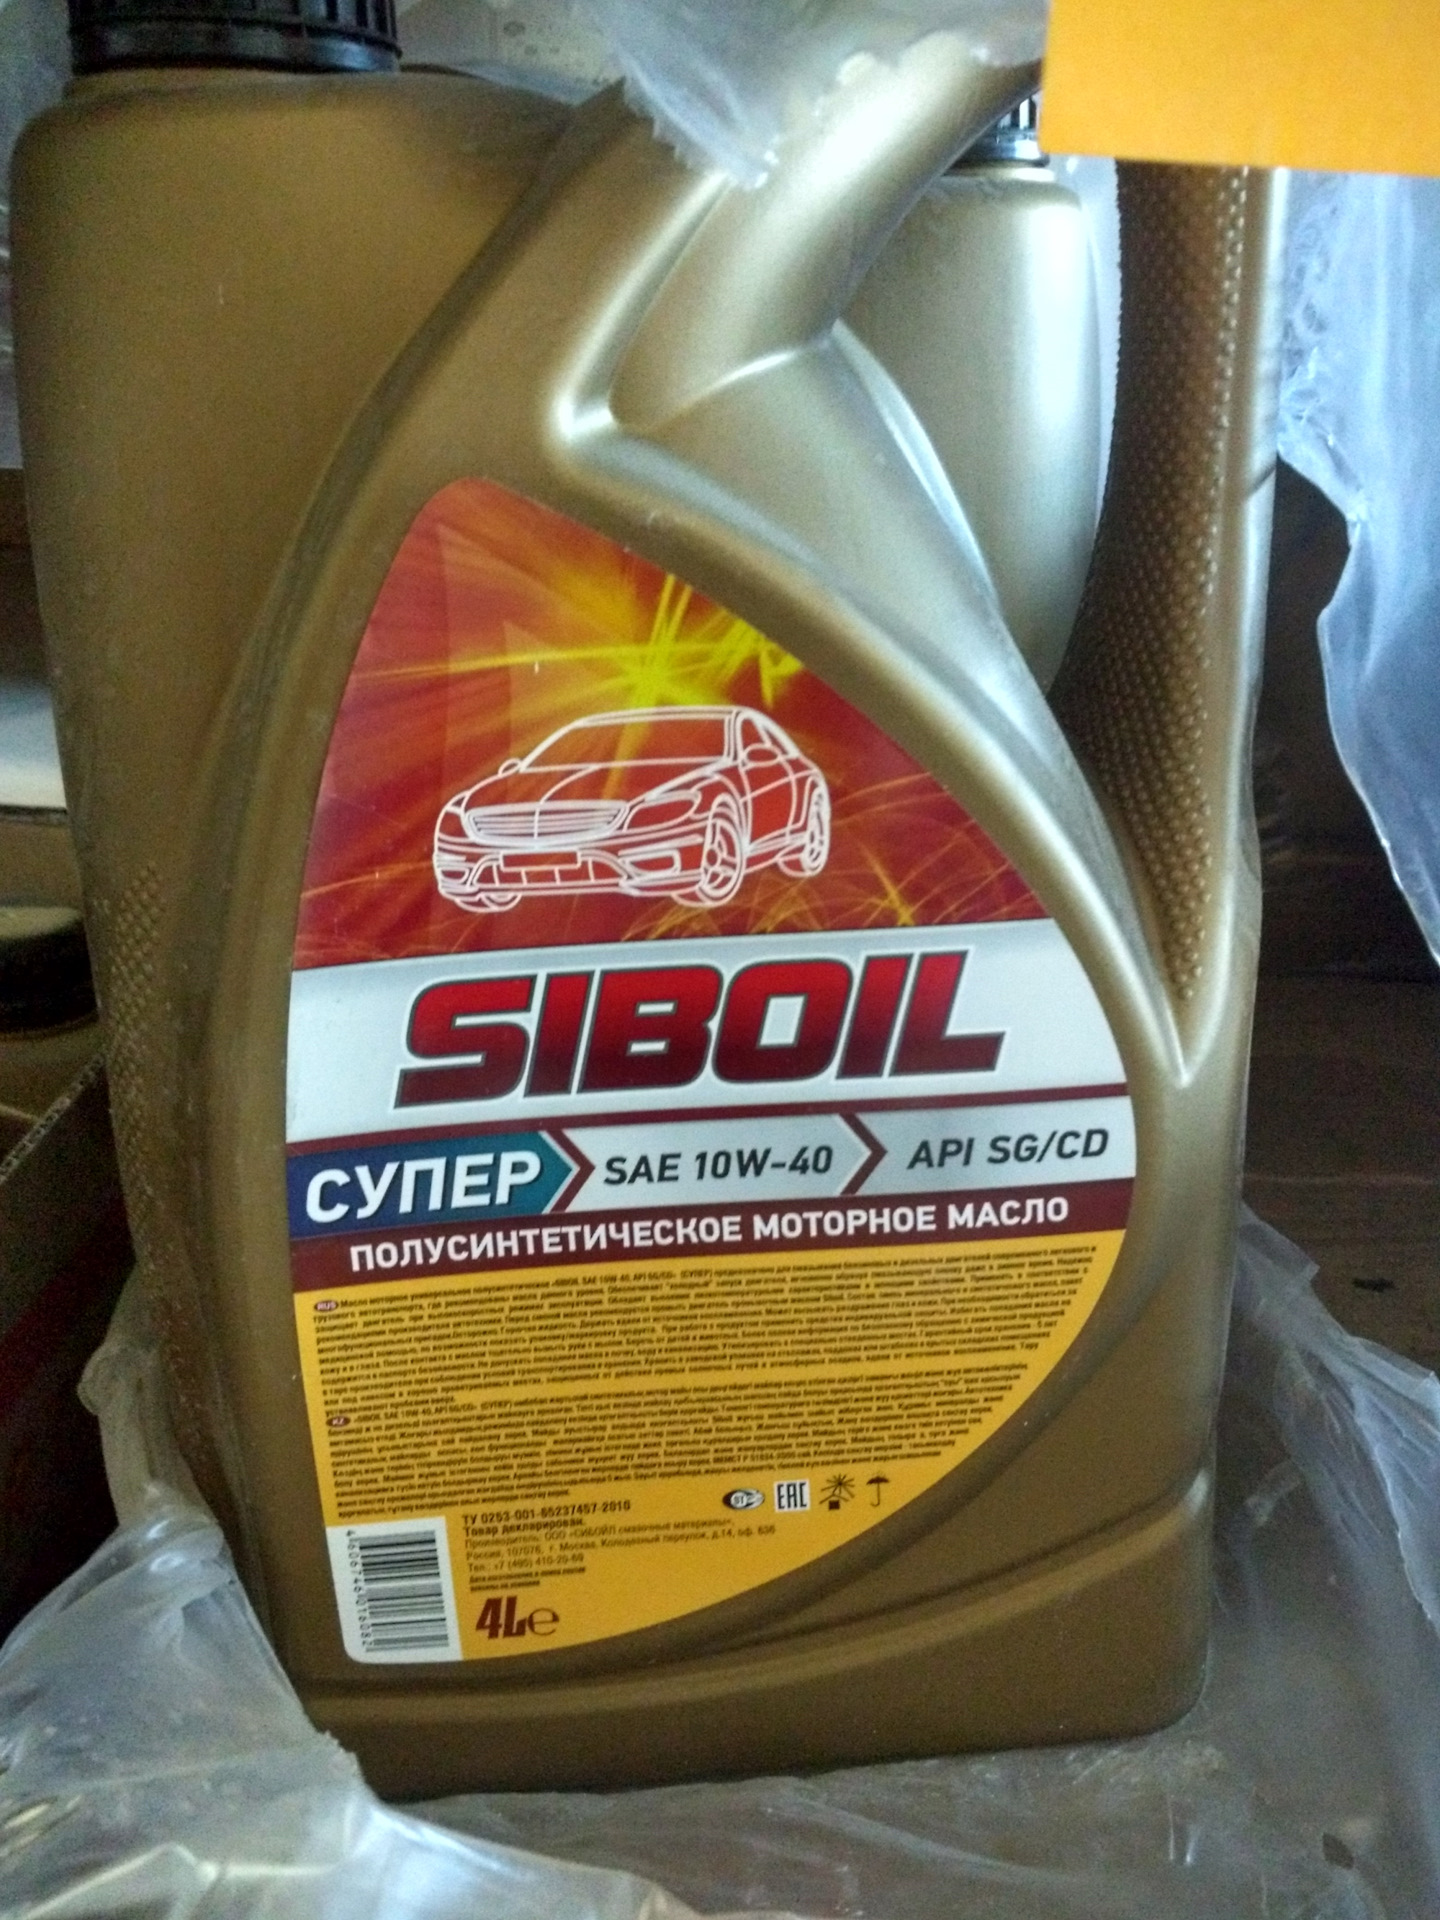 Цены масло 10в40. Моторное масло Siboil SAE 10-w40. Моторное масло Сибойл 10w 40. Моторное масло "Siboil супер" SAE 10w40 п/синтетическое 4л.. Масло моторное Siboil 10w-40 полусинтетическое.